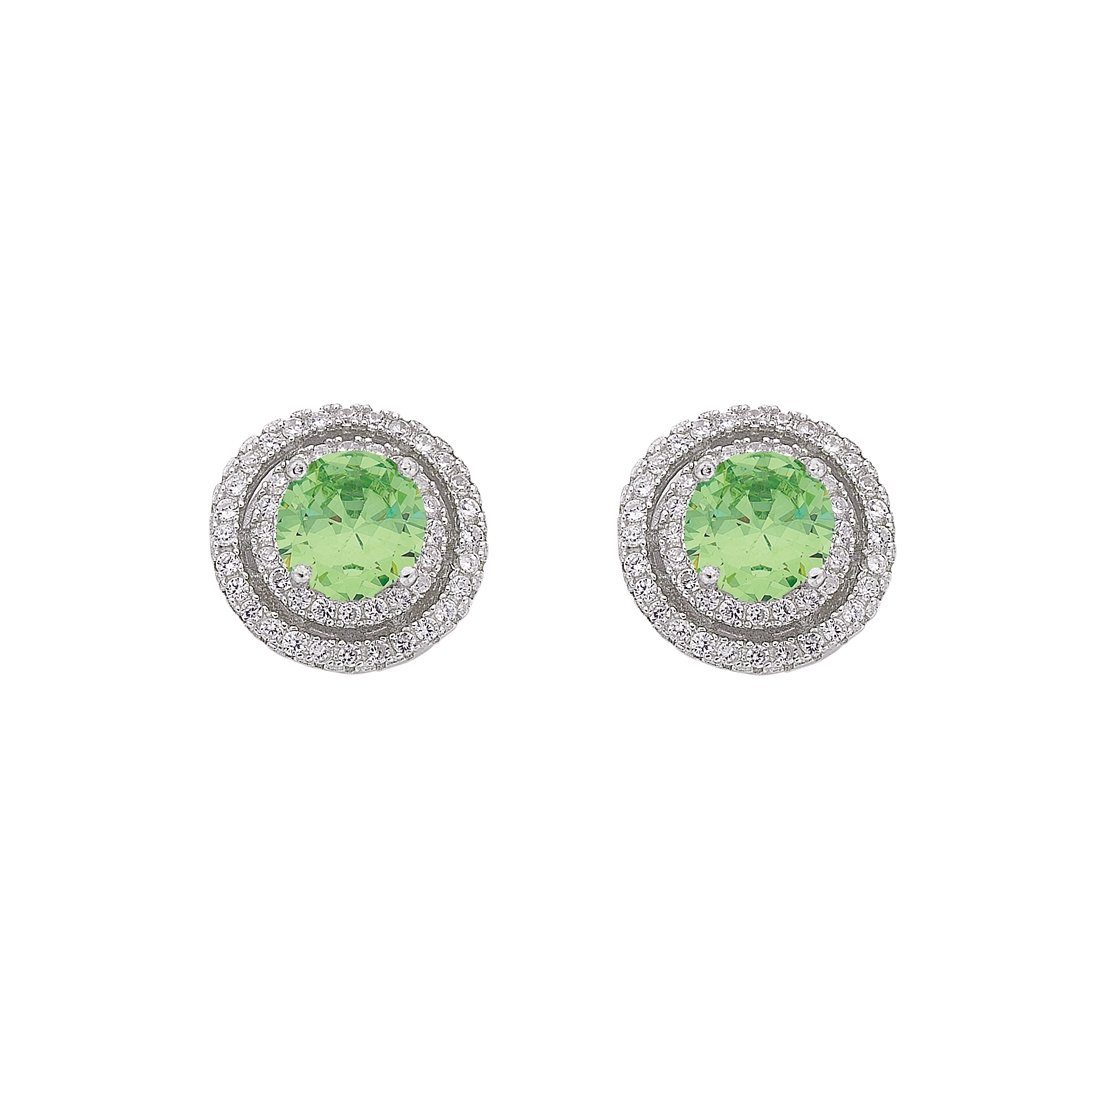 August Birthstone Sterling Silver Light Green Cubic Zirconia Halo Earrings Earrings Bevilles 